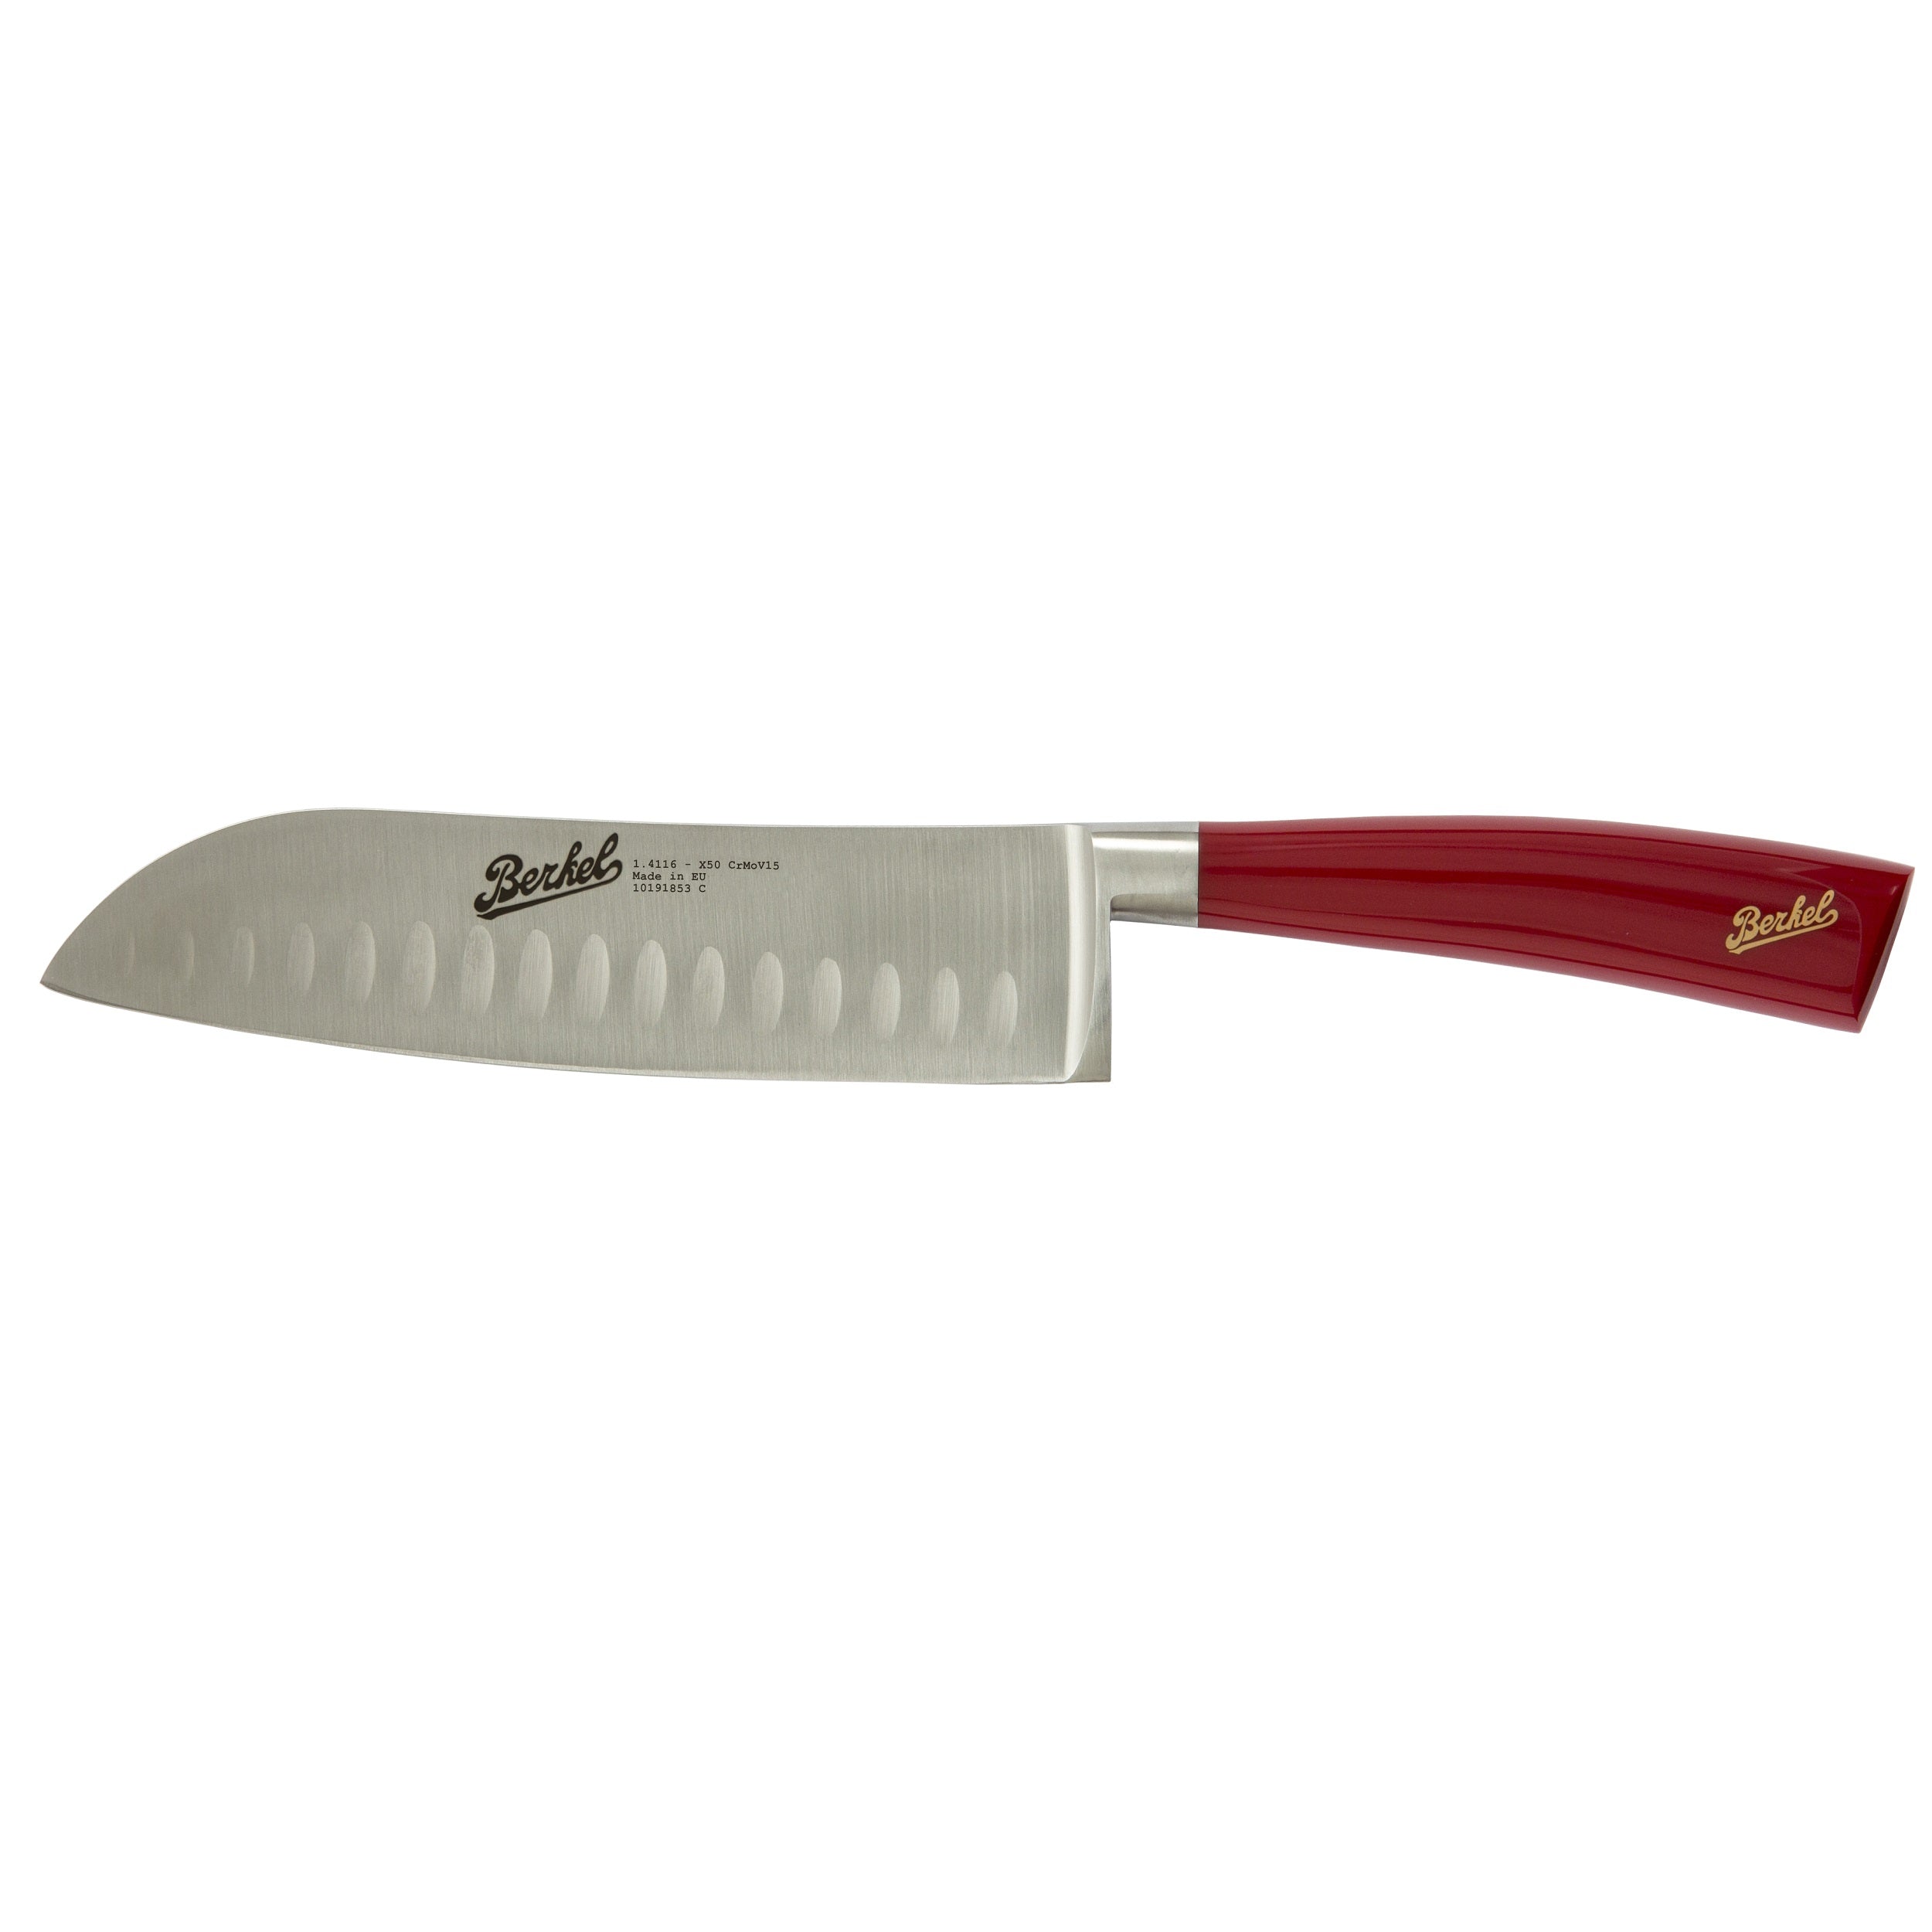 Berkel Elegance Santoku knife 18 cm Steel handle